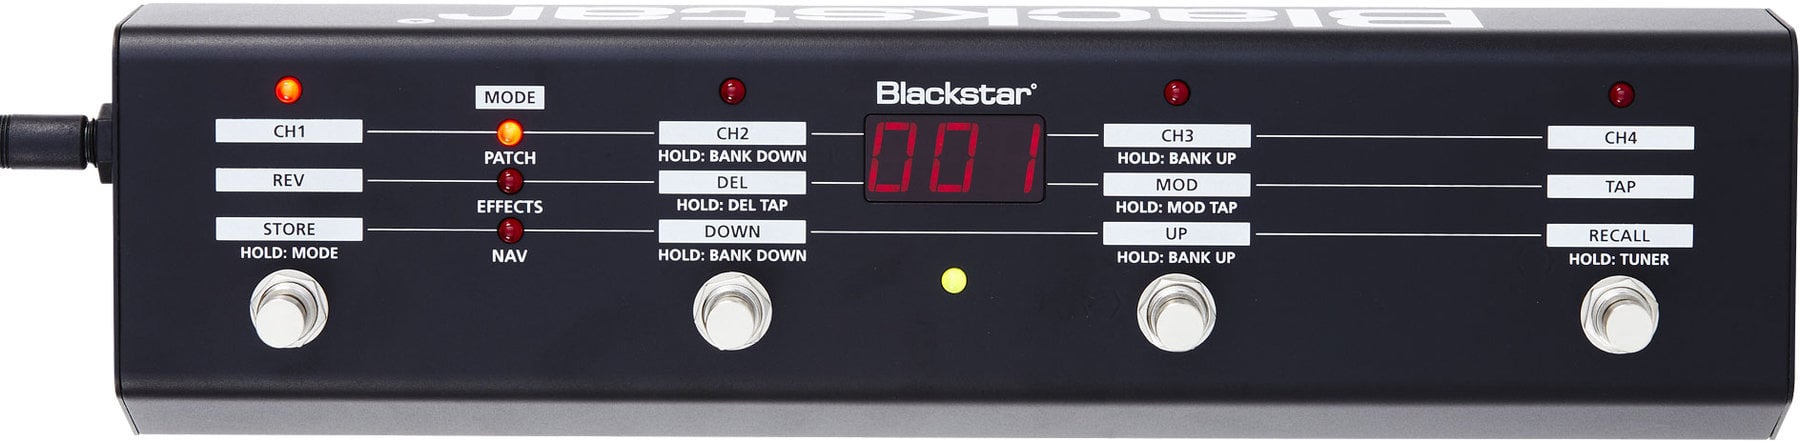 Fußschalter Blackstar FS-10 Fußschalter